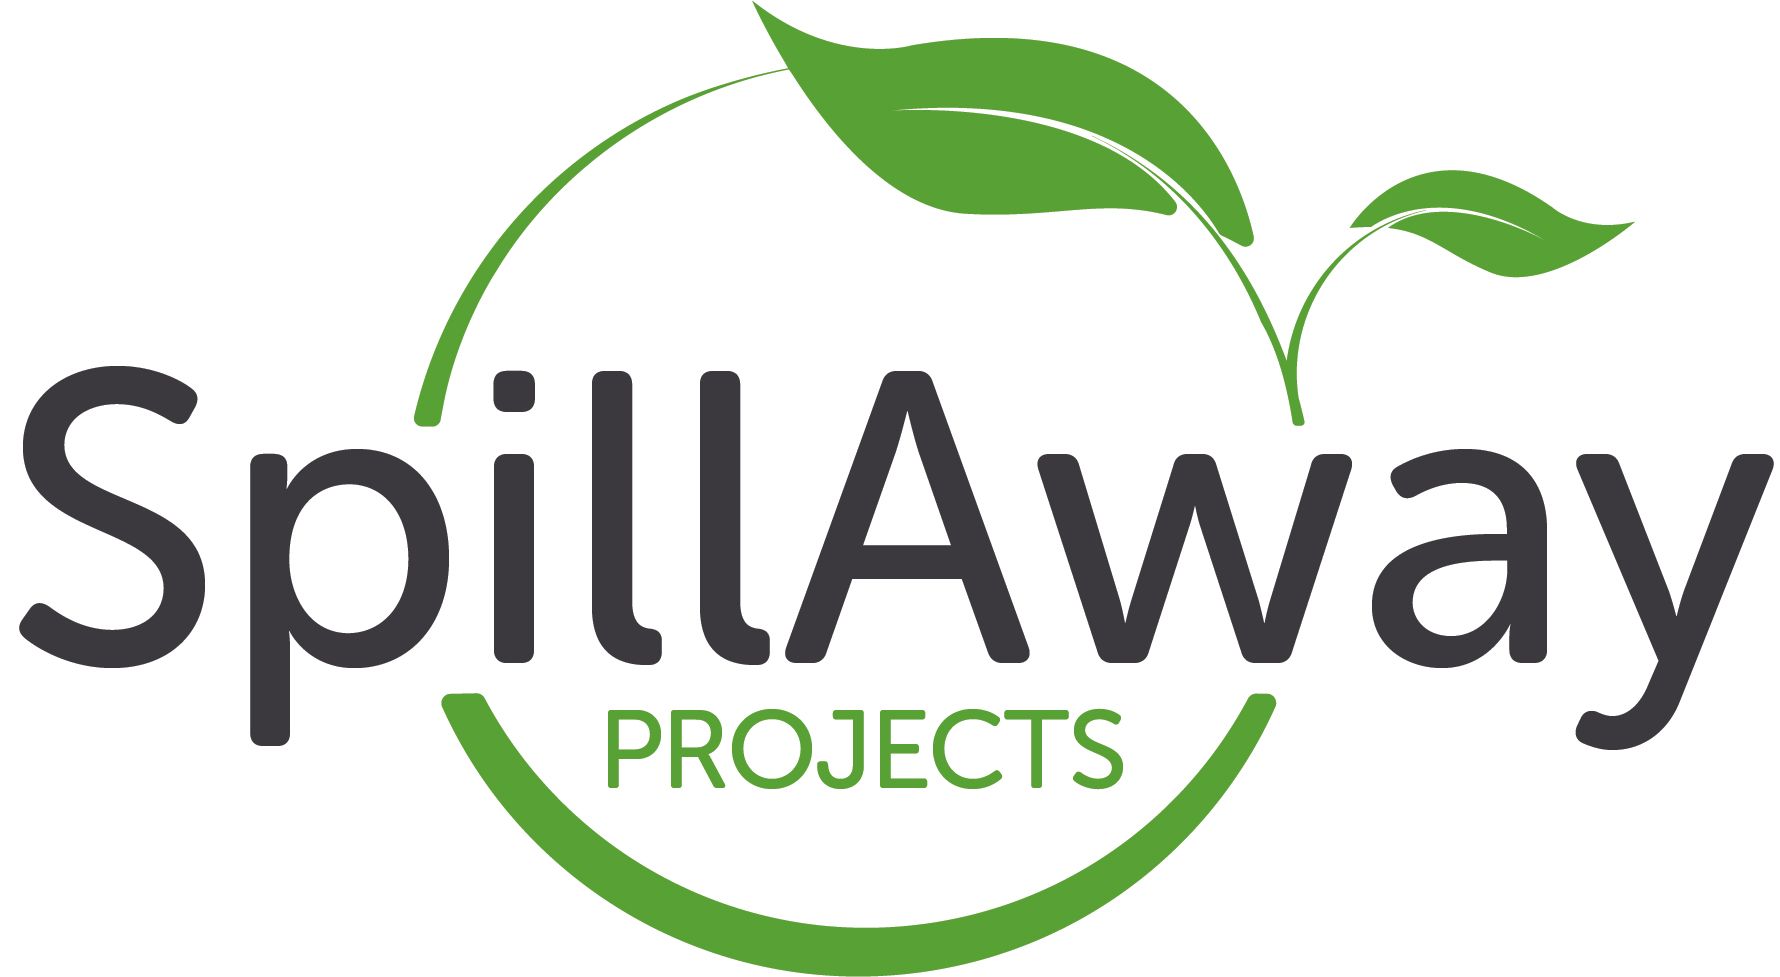 SpillAway Projects Ltd